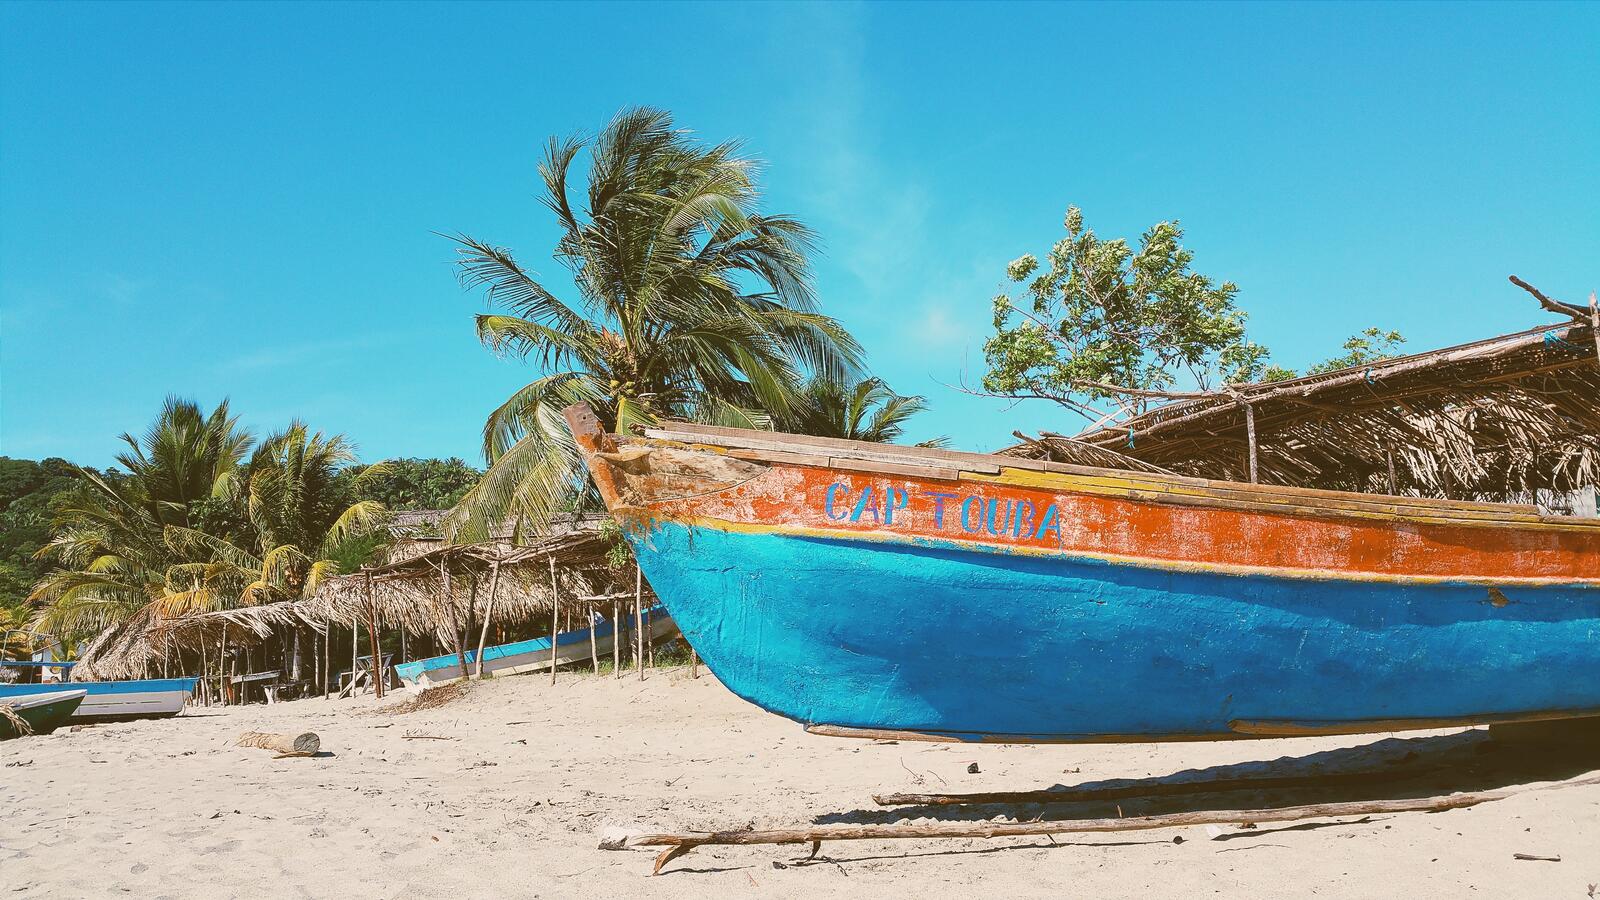 Бесплатное фото Старая заброшенная лодка на пляже с пальмами